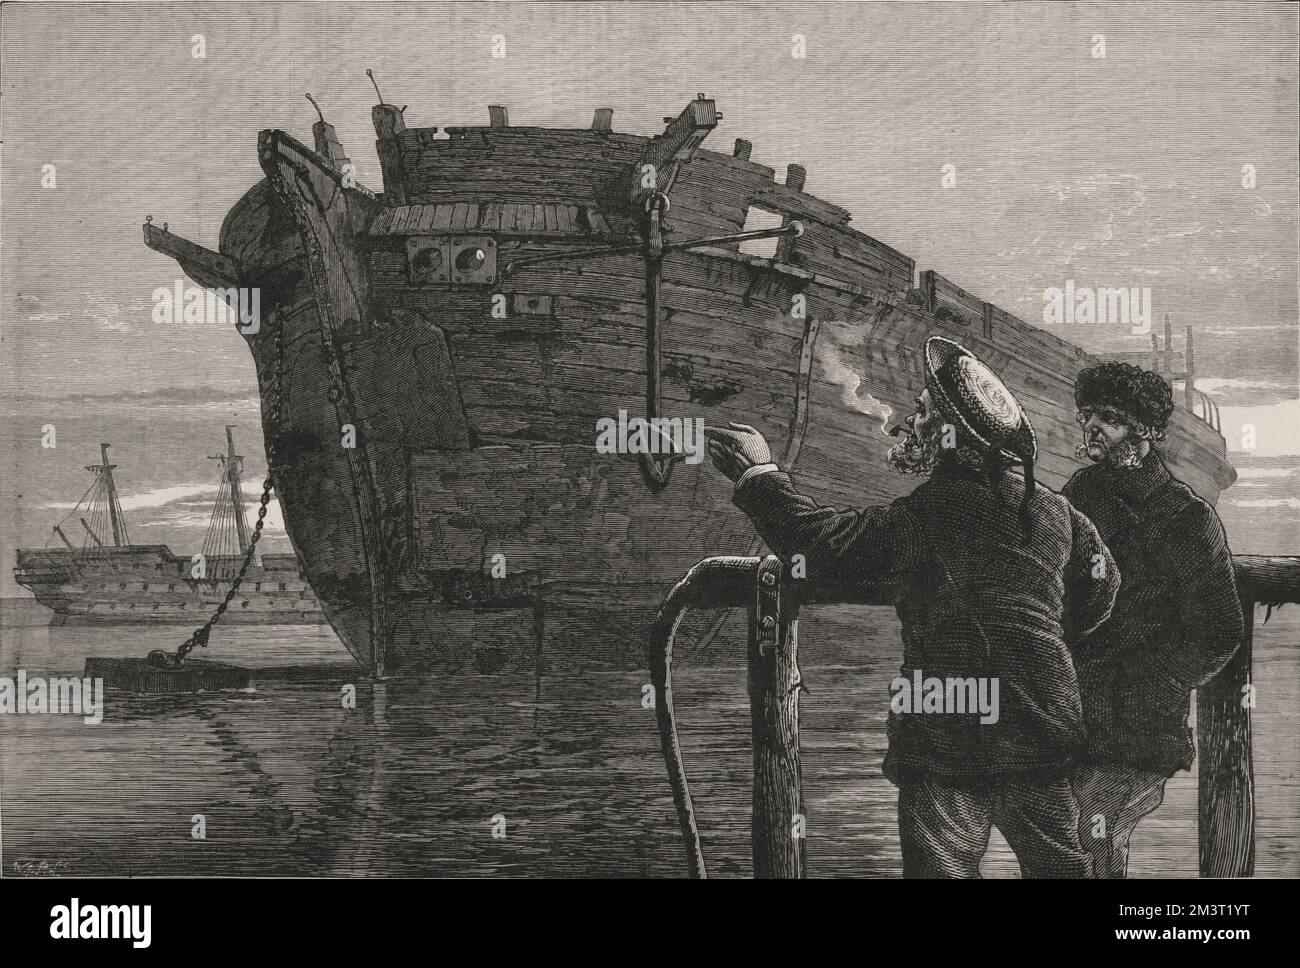 La vecchia nave esplorante artica, HMS Resolute, si è rotta nel cantiere navale di Chatham. Due marinai contemplano il relitto. Foto Stock